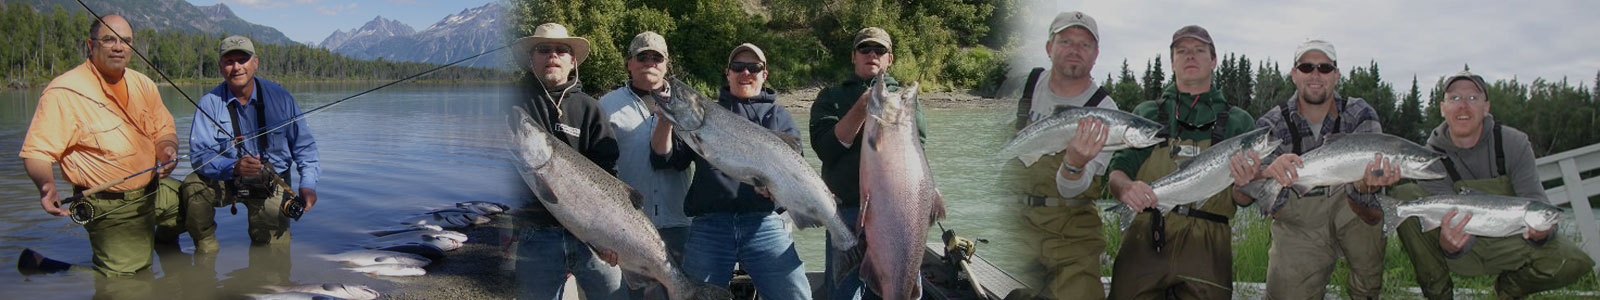 Alaskan Salmon Fishing Trips